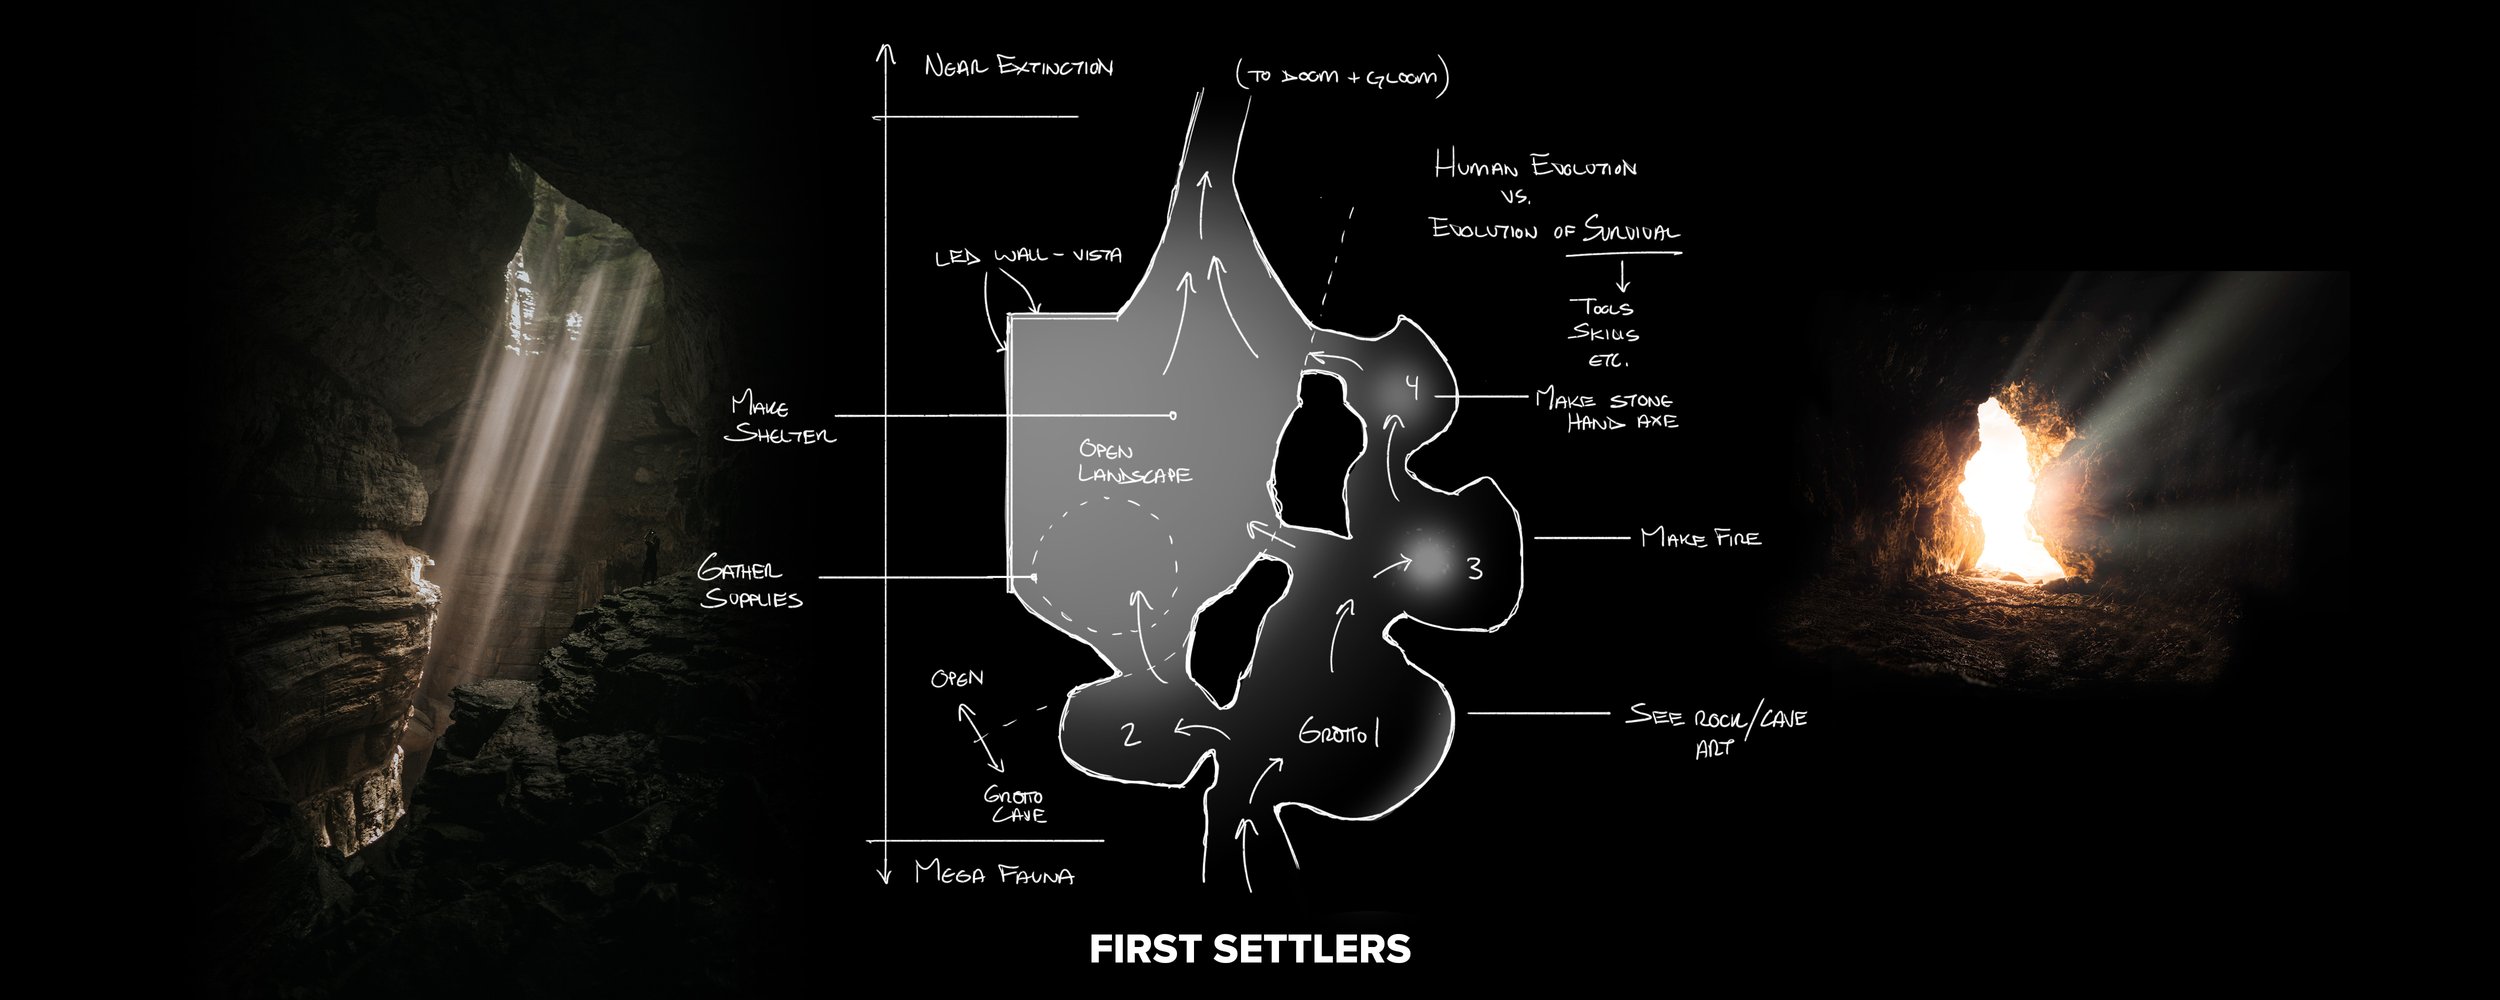 4 First Settlers Floor Plan concept 001.jpg